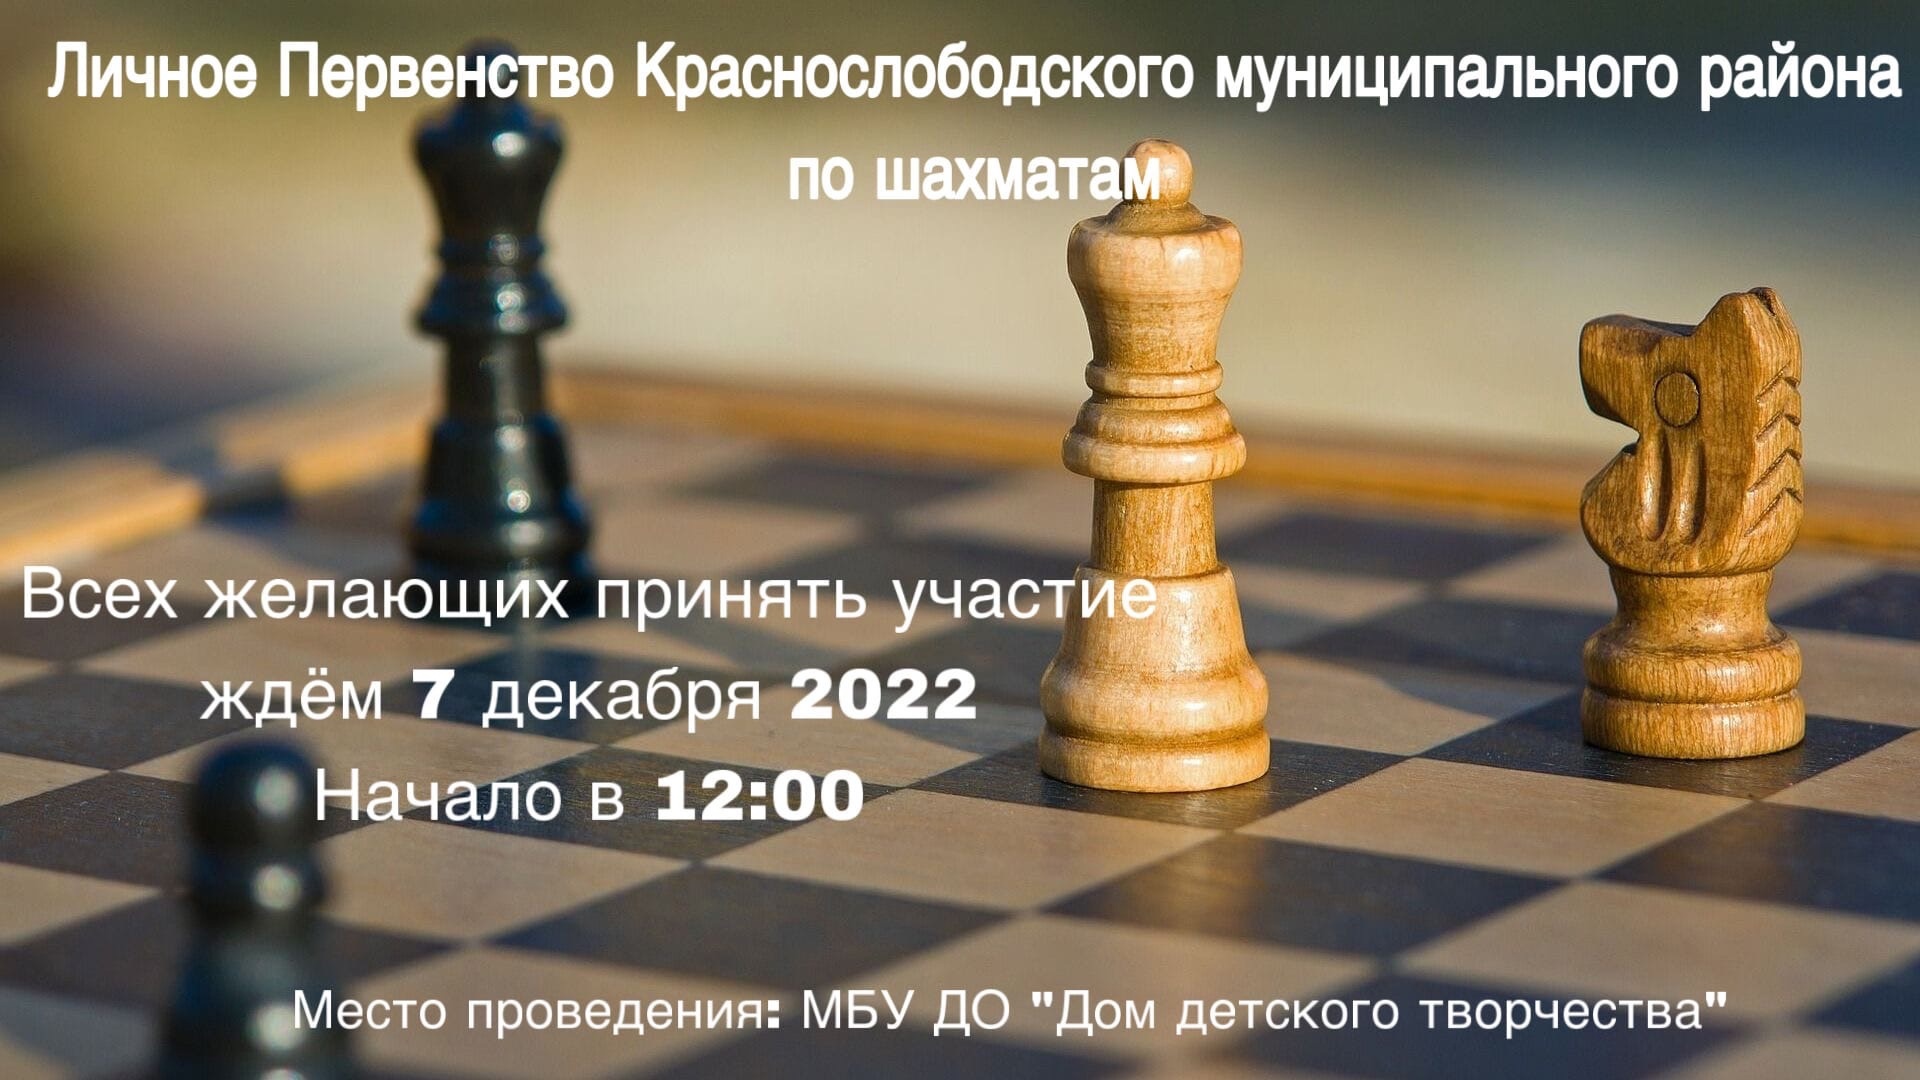 Личное Первенство Краснослободского муниципального района по шахматам